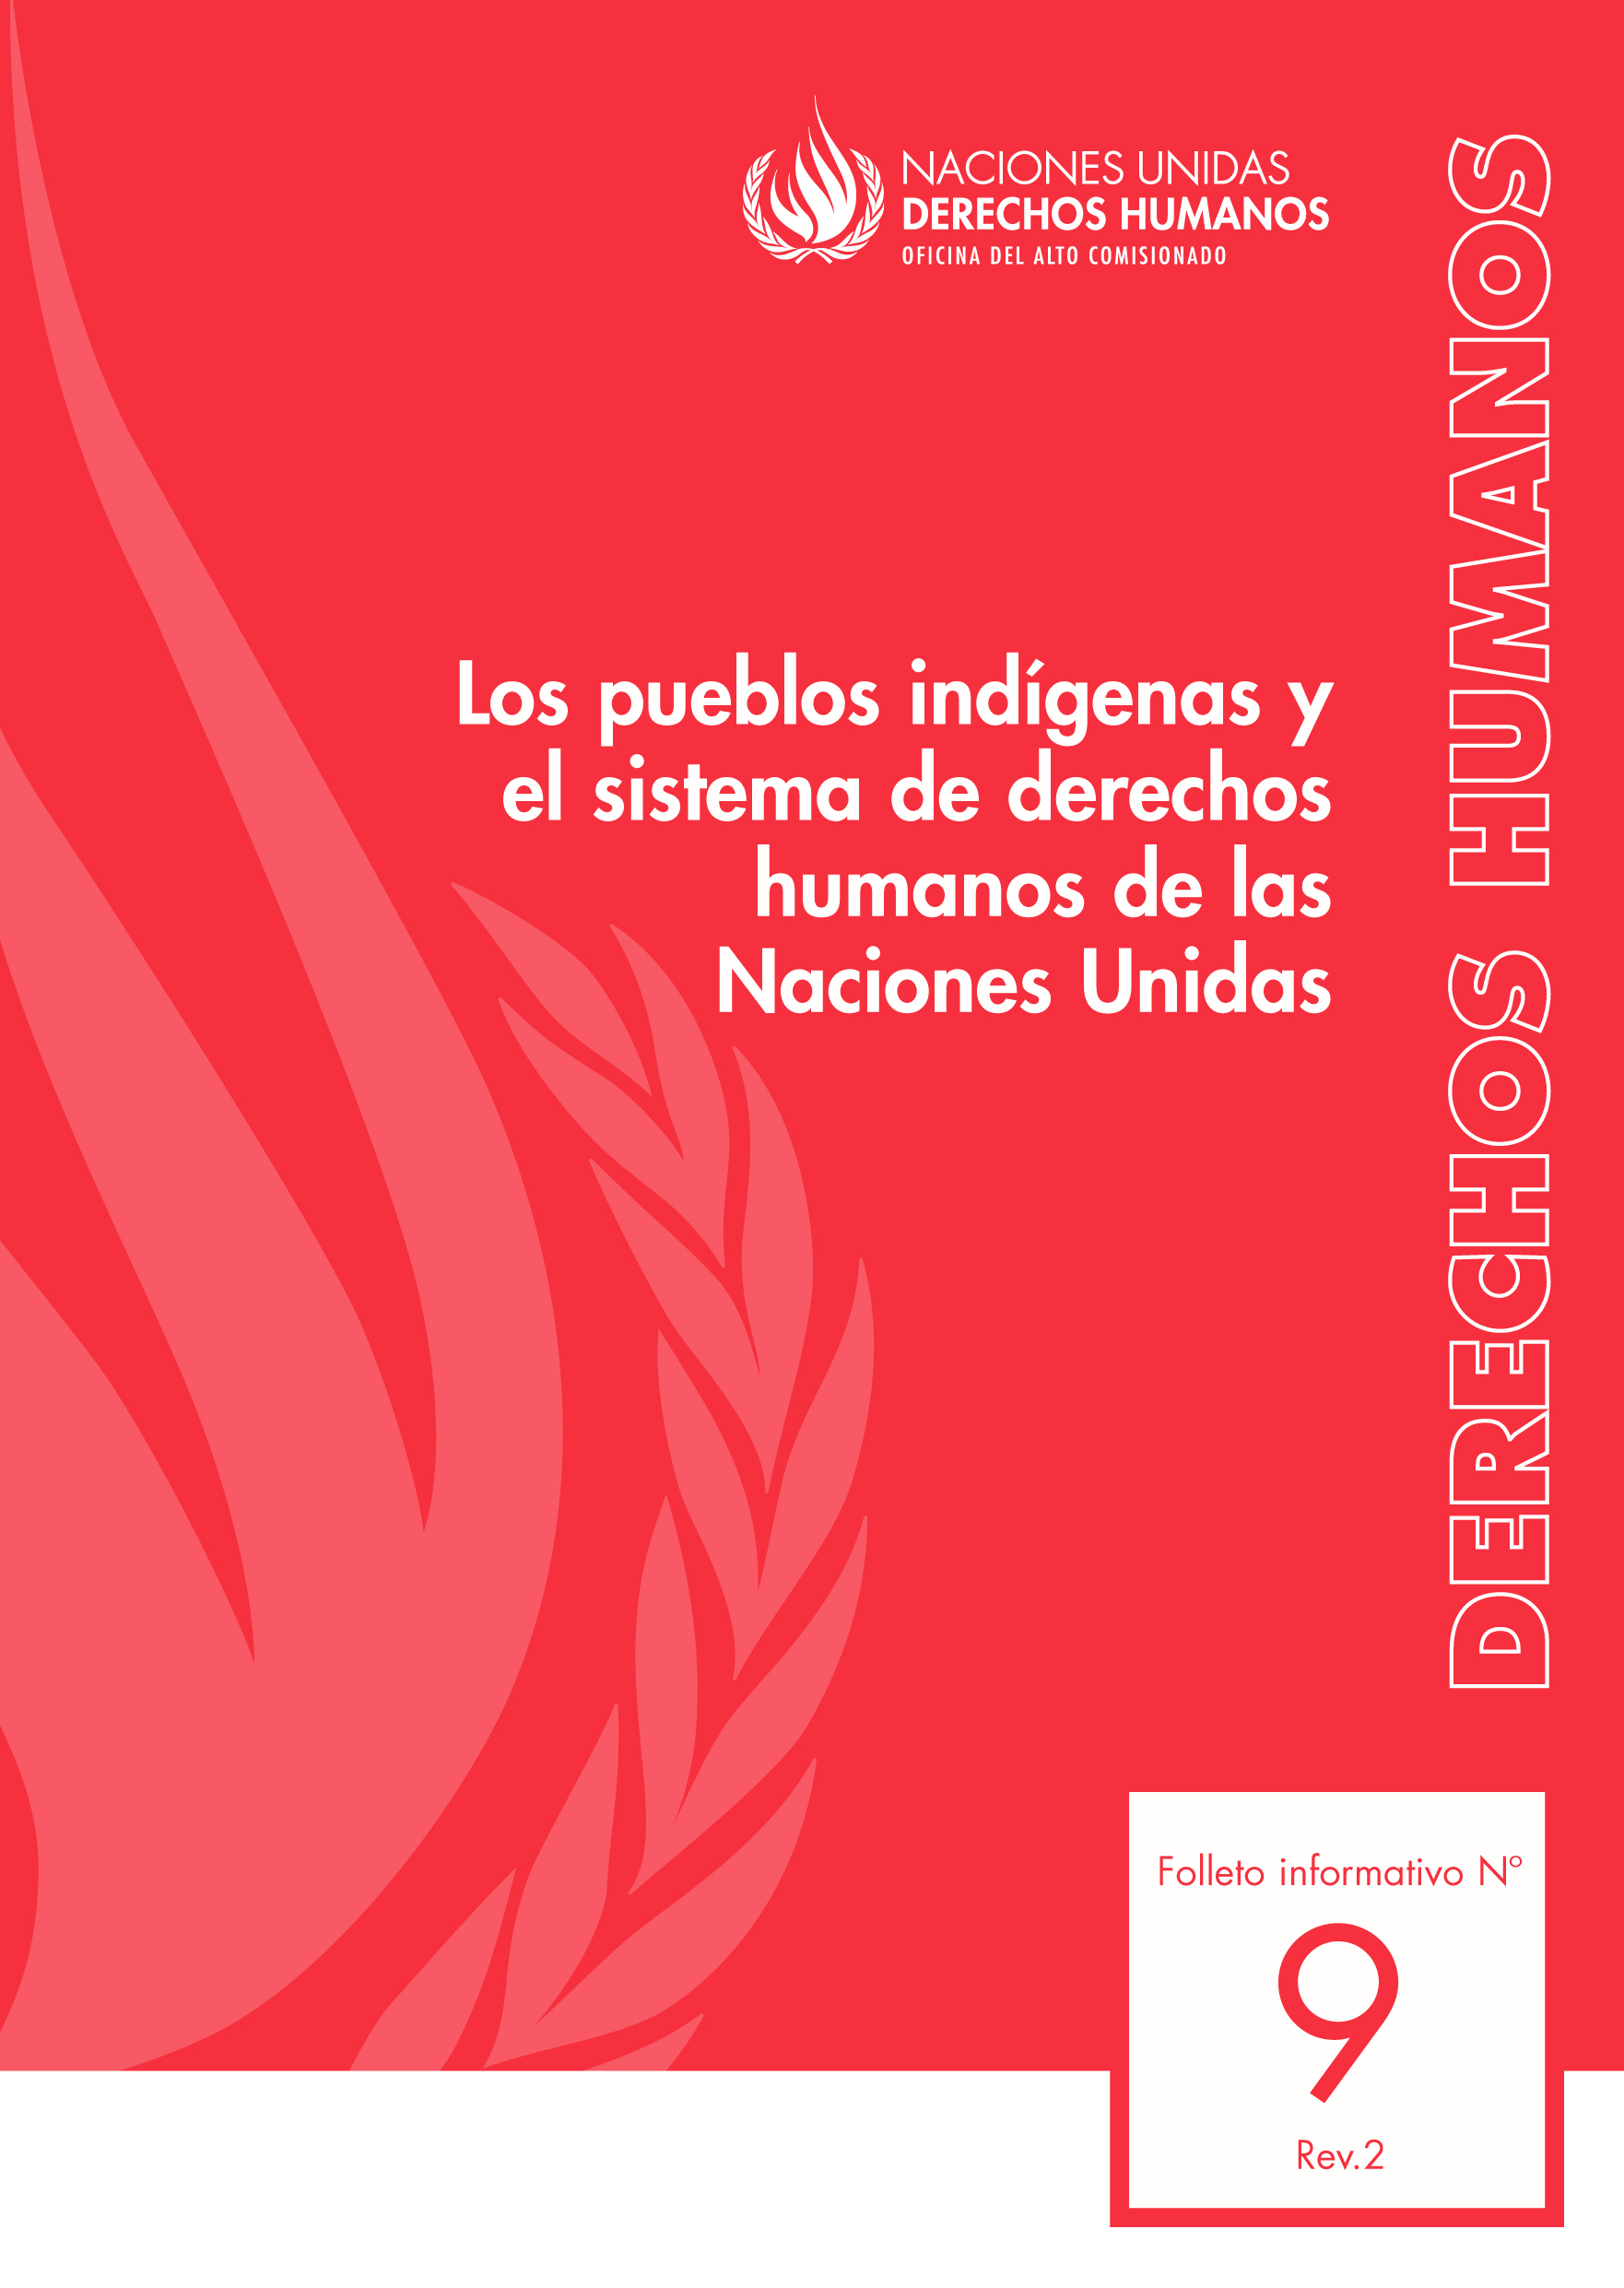 image of Derechos humanos folleto informativo No. 9, Rev. 2